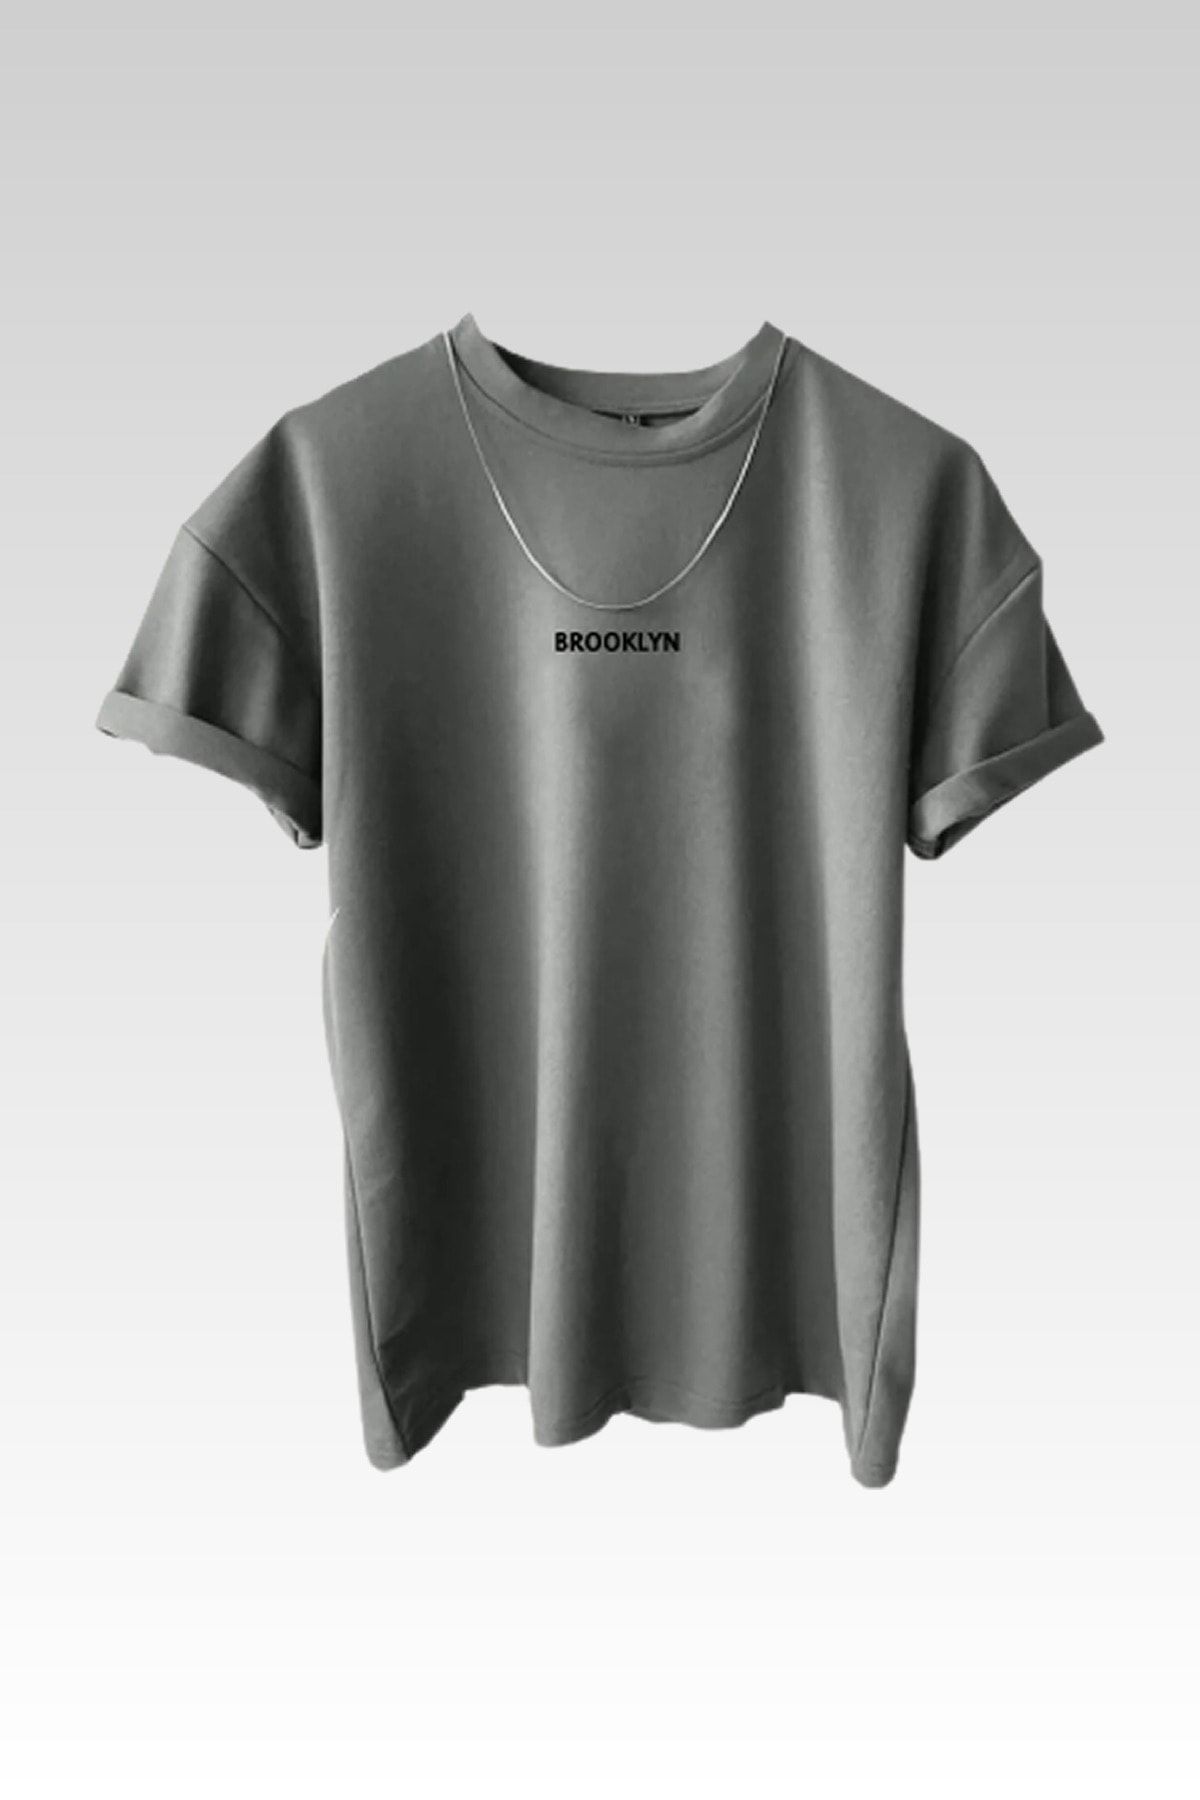 MODAGEN Unisex-T-Shirt mit Brooklyn-Aufdruck im 3er-Pack in Braun-Grau-Weiß